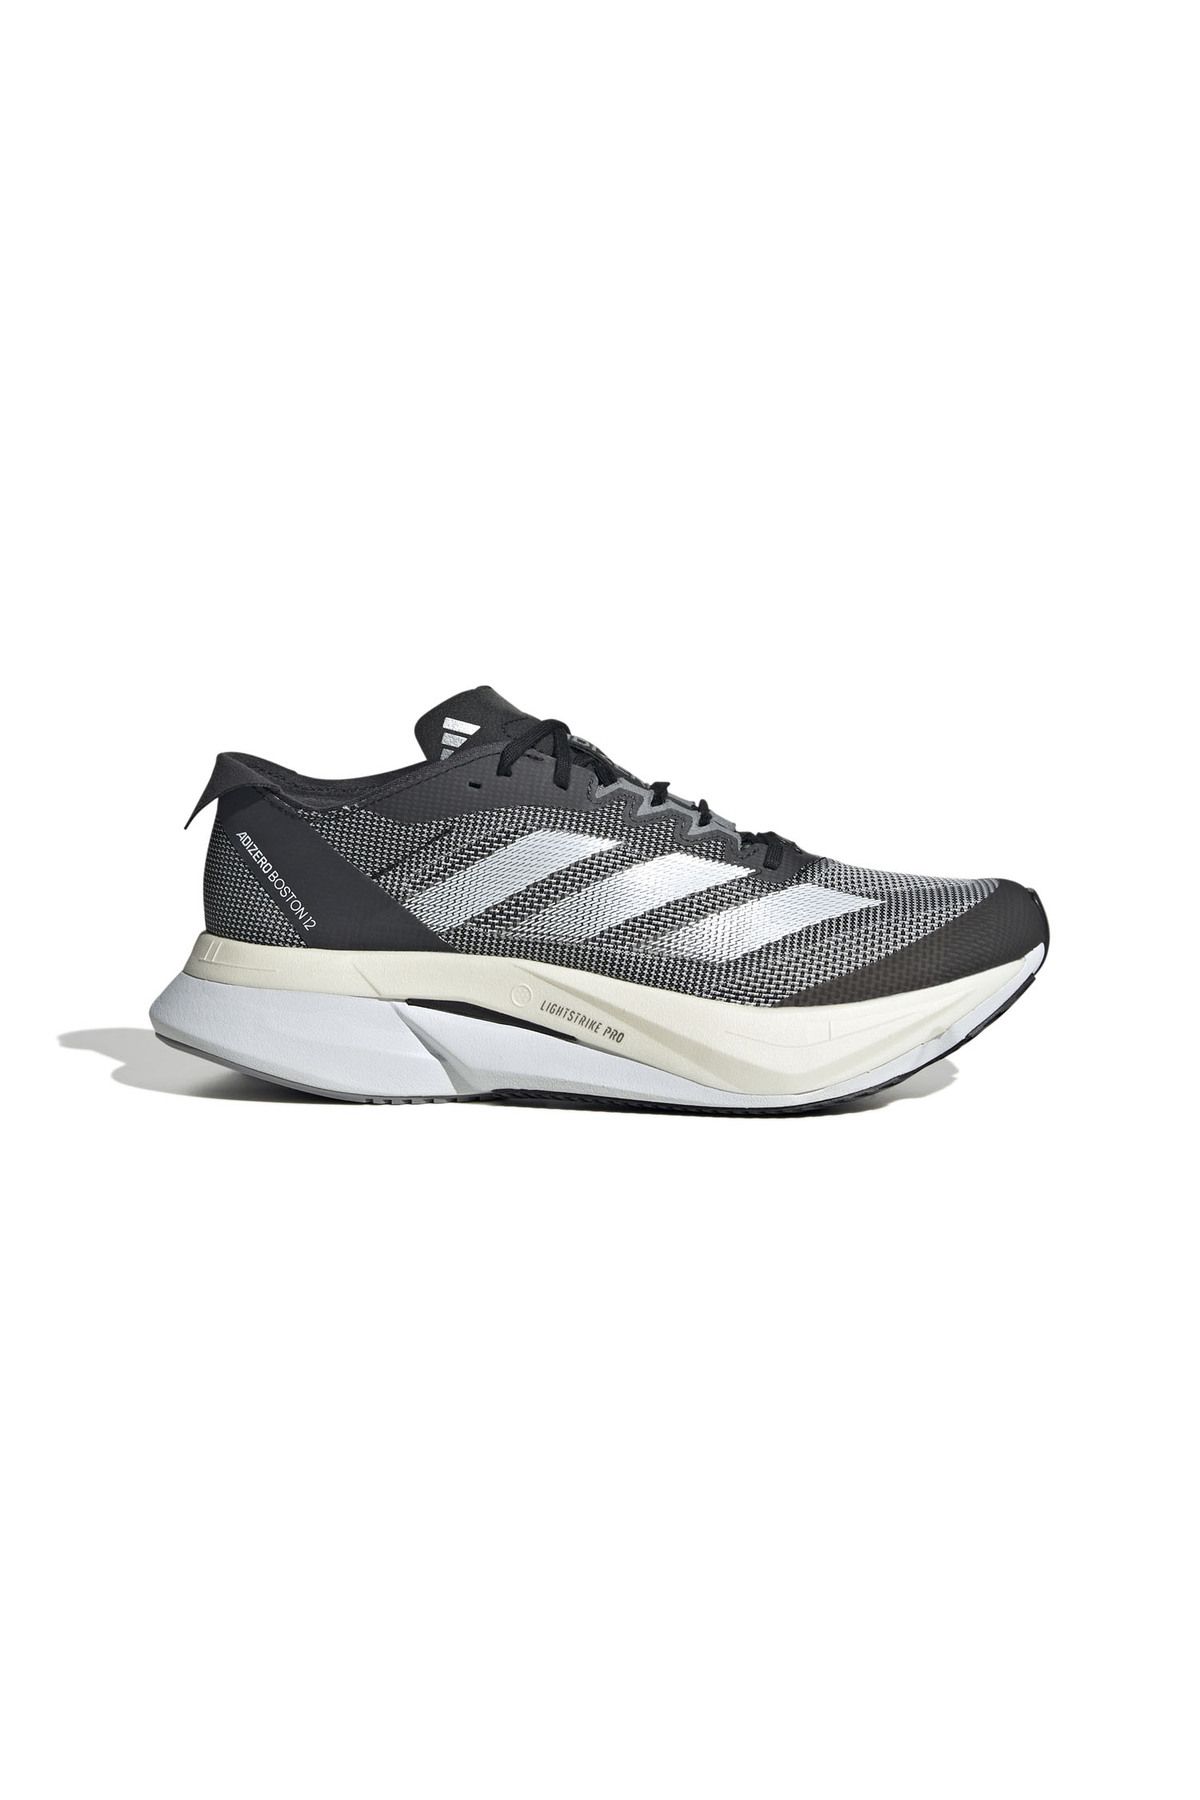 adidas Adizero Boston 12 Kadın Koşu Ayakkabısı